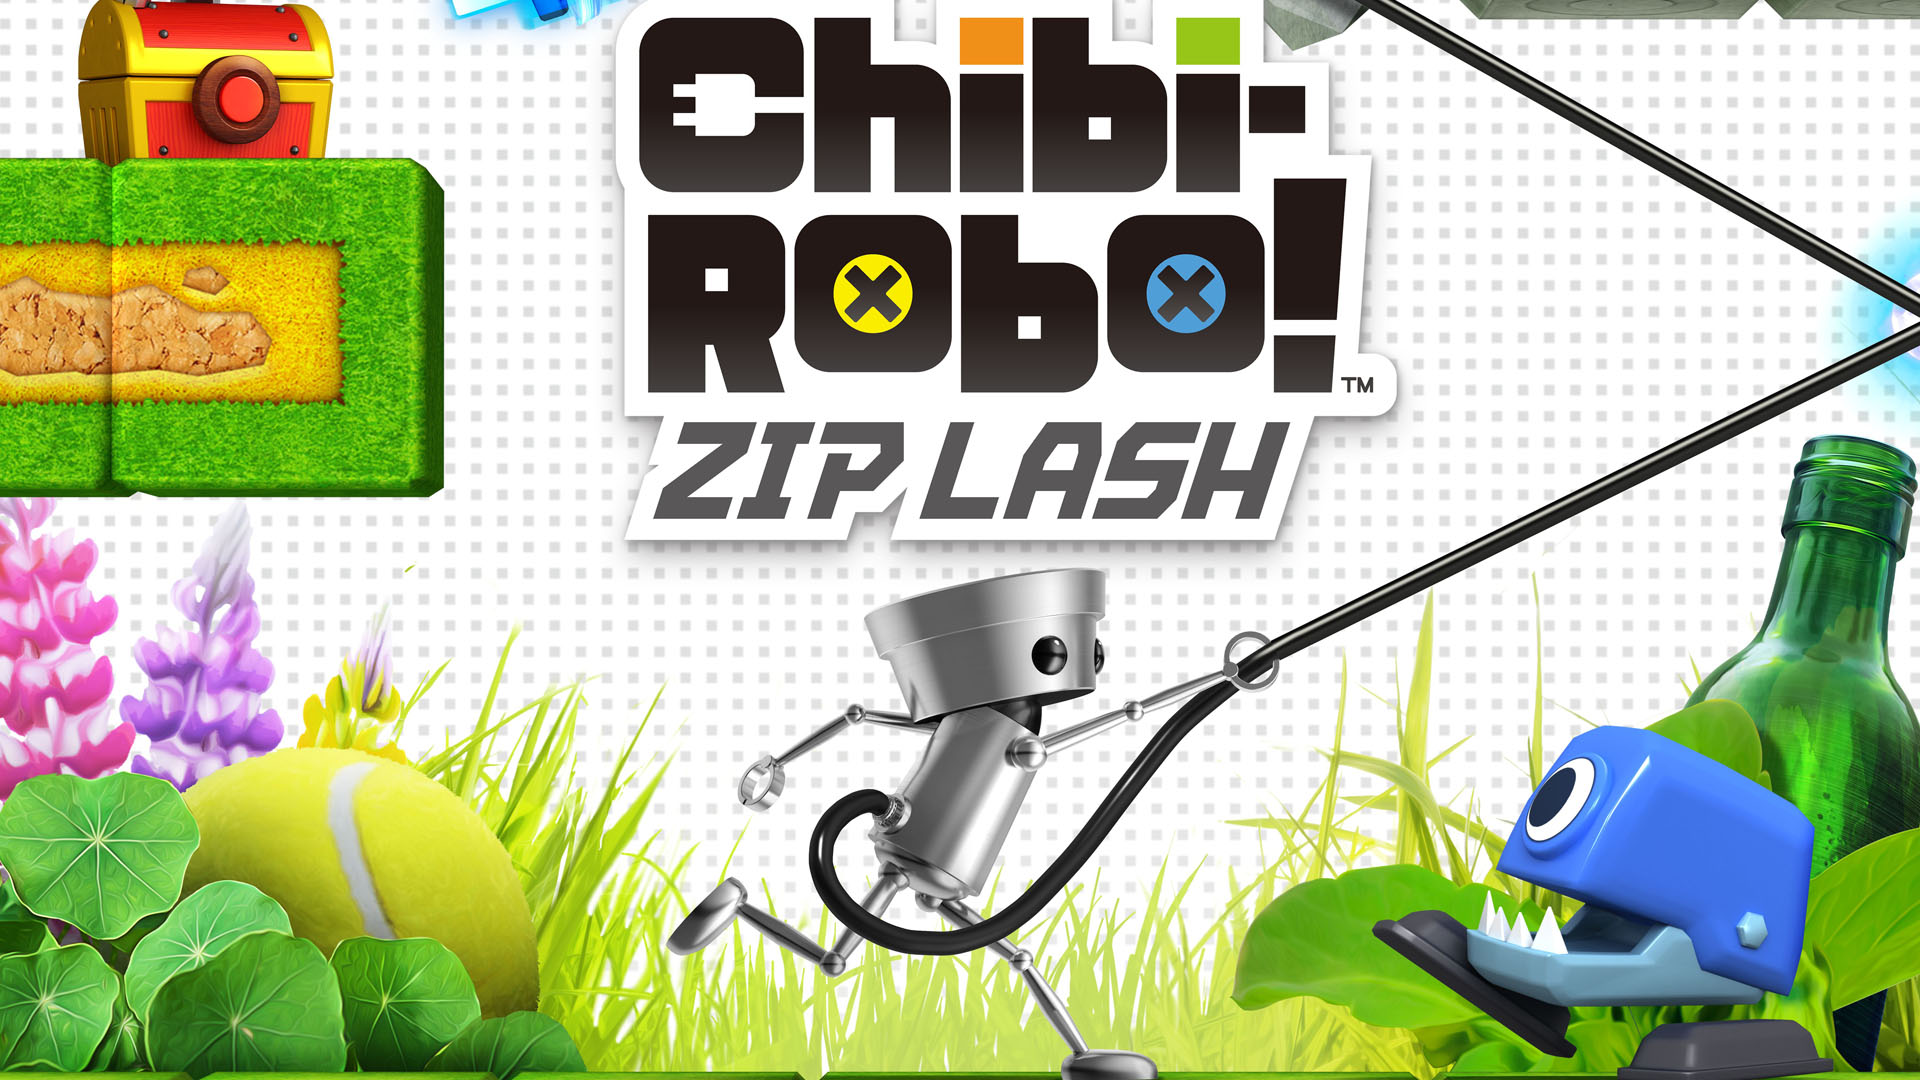 IM1451: Chibi-Robo! Zip Lash